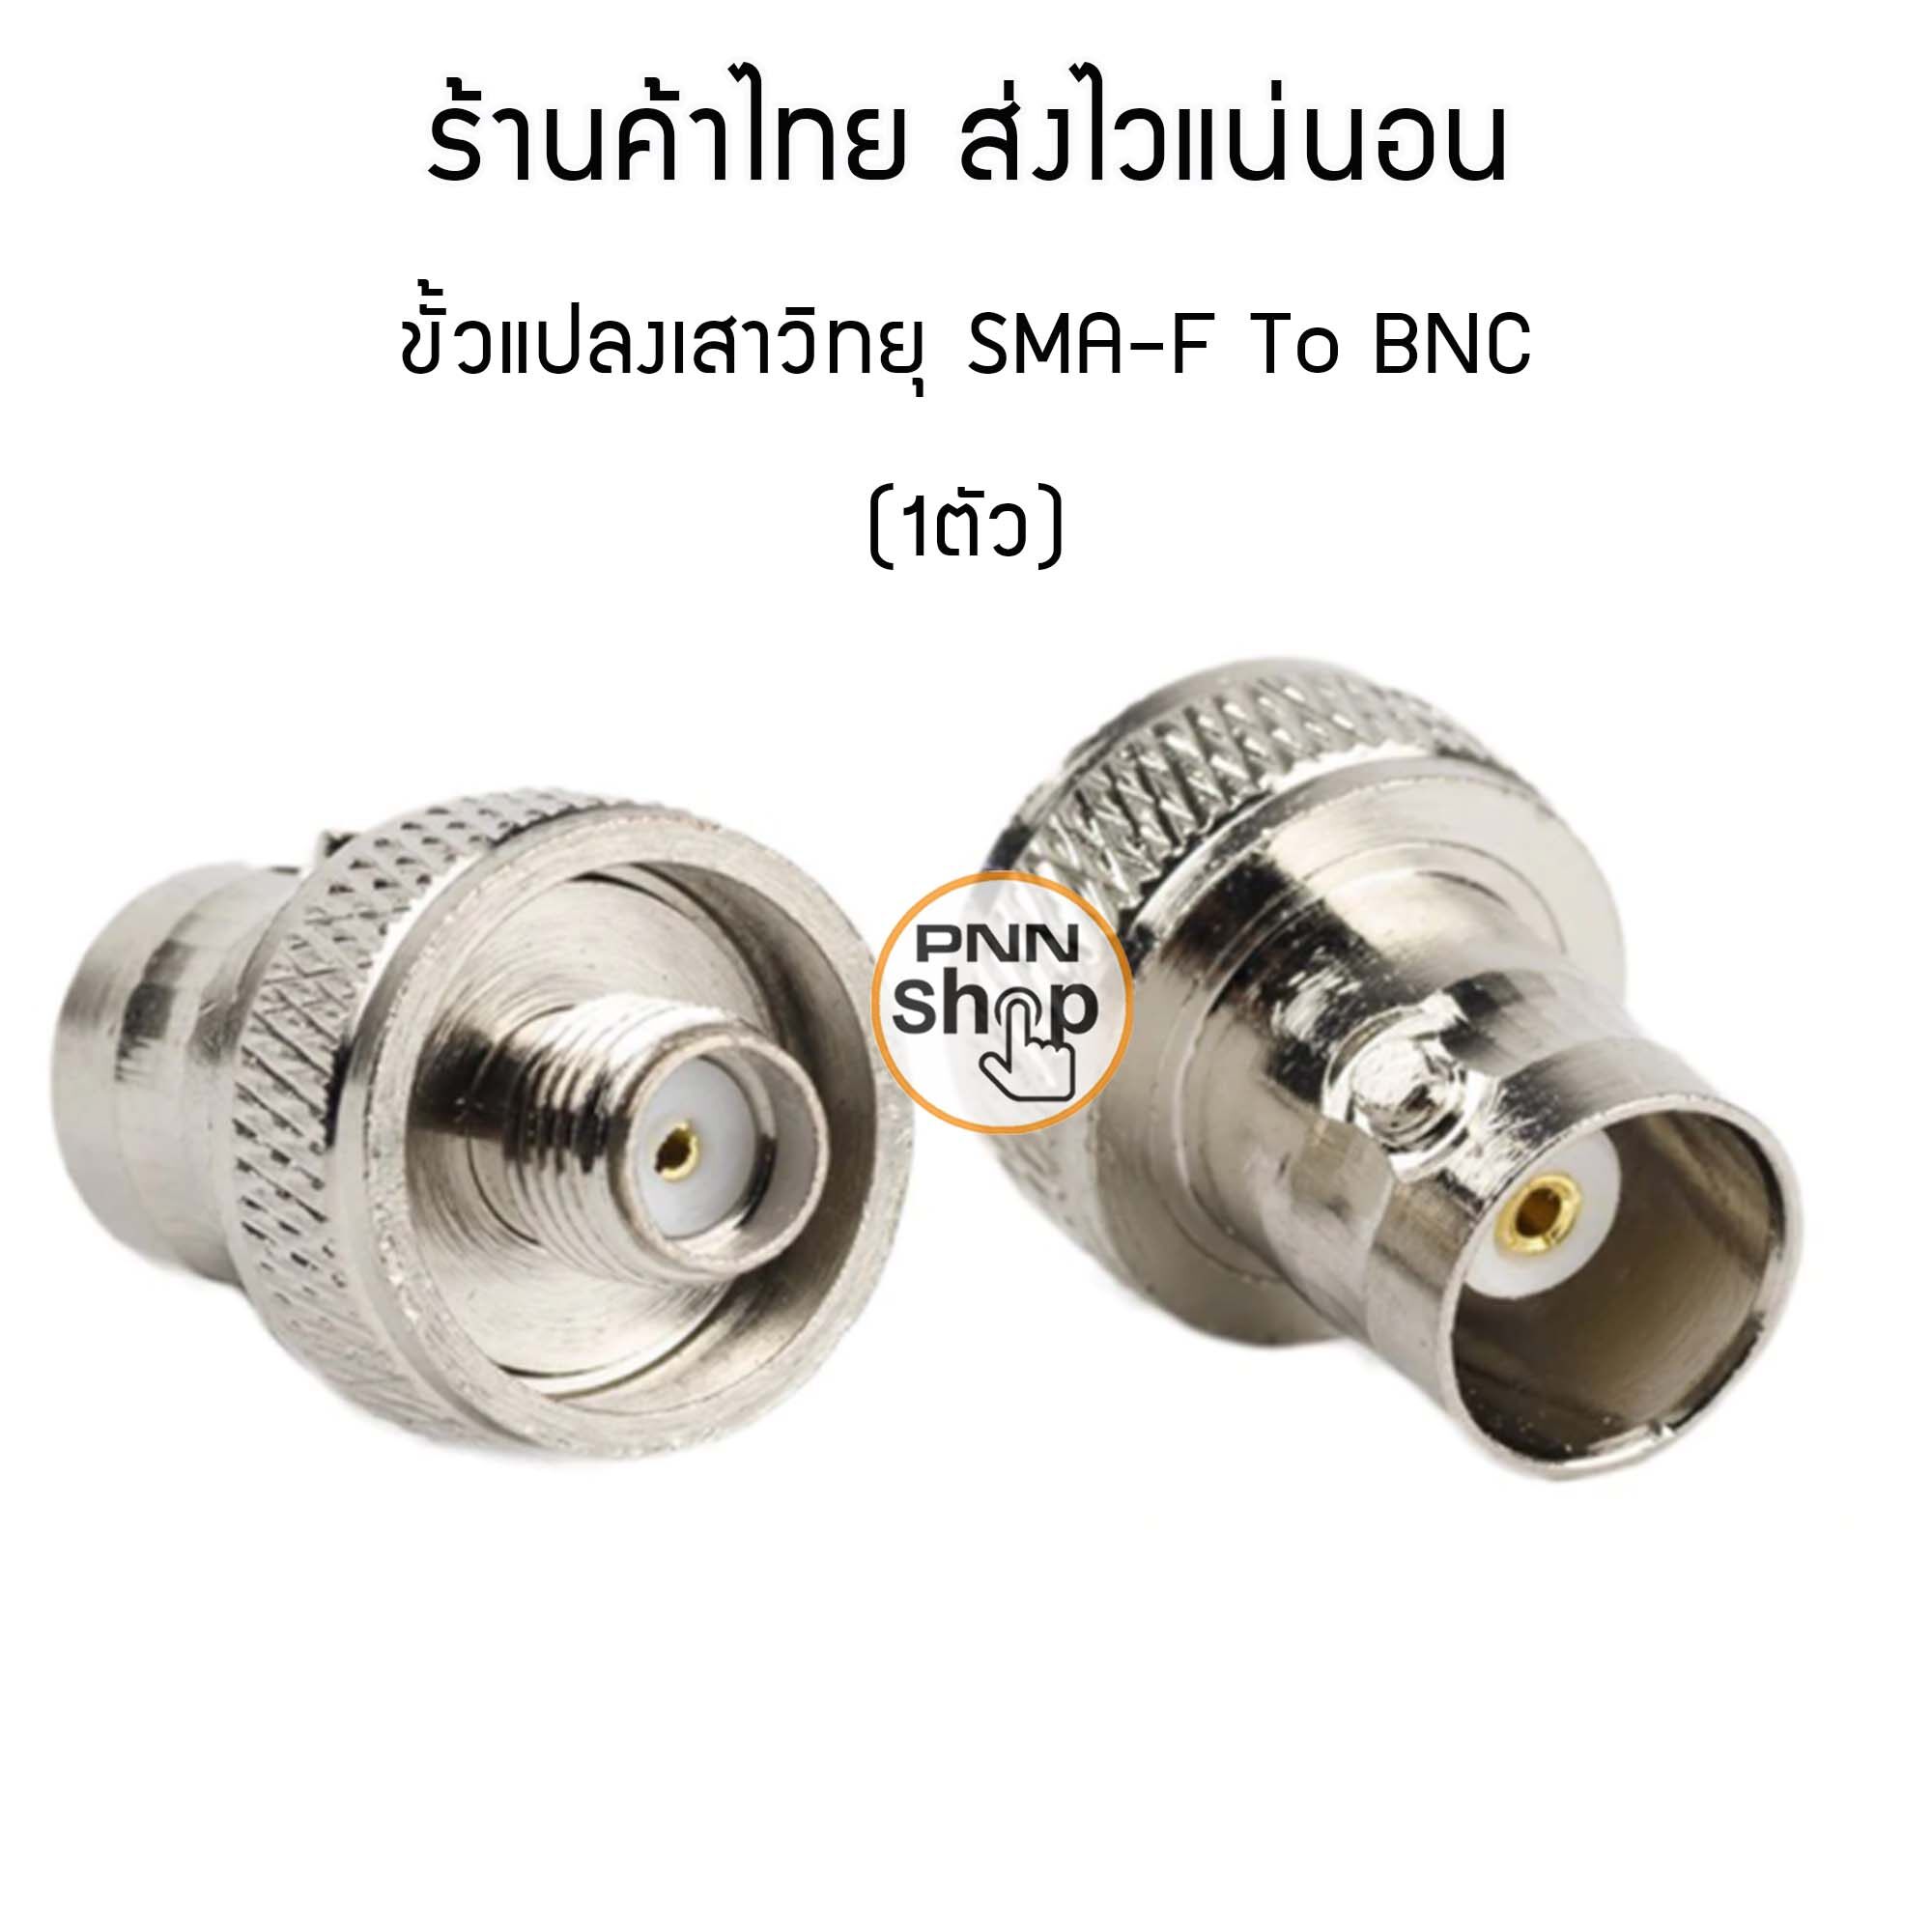 (1ตัว) ขั้วแปลง เสาวิทยุสื่อสาร SMA ตัวเมีย (F) เป็น BNC (adapter BNC To SMA F) สี เงิน /ดำ/ทอง